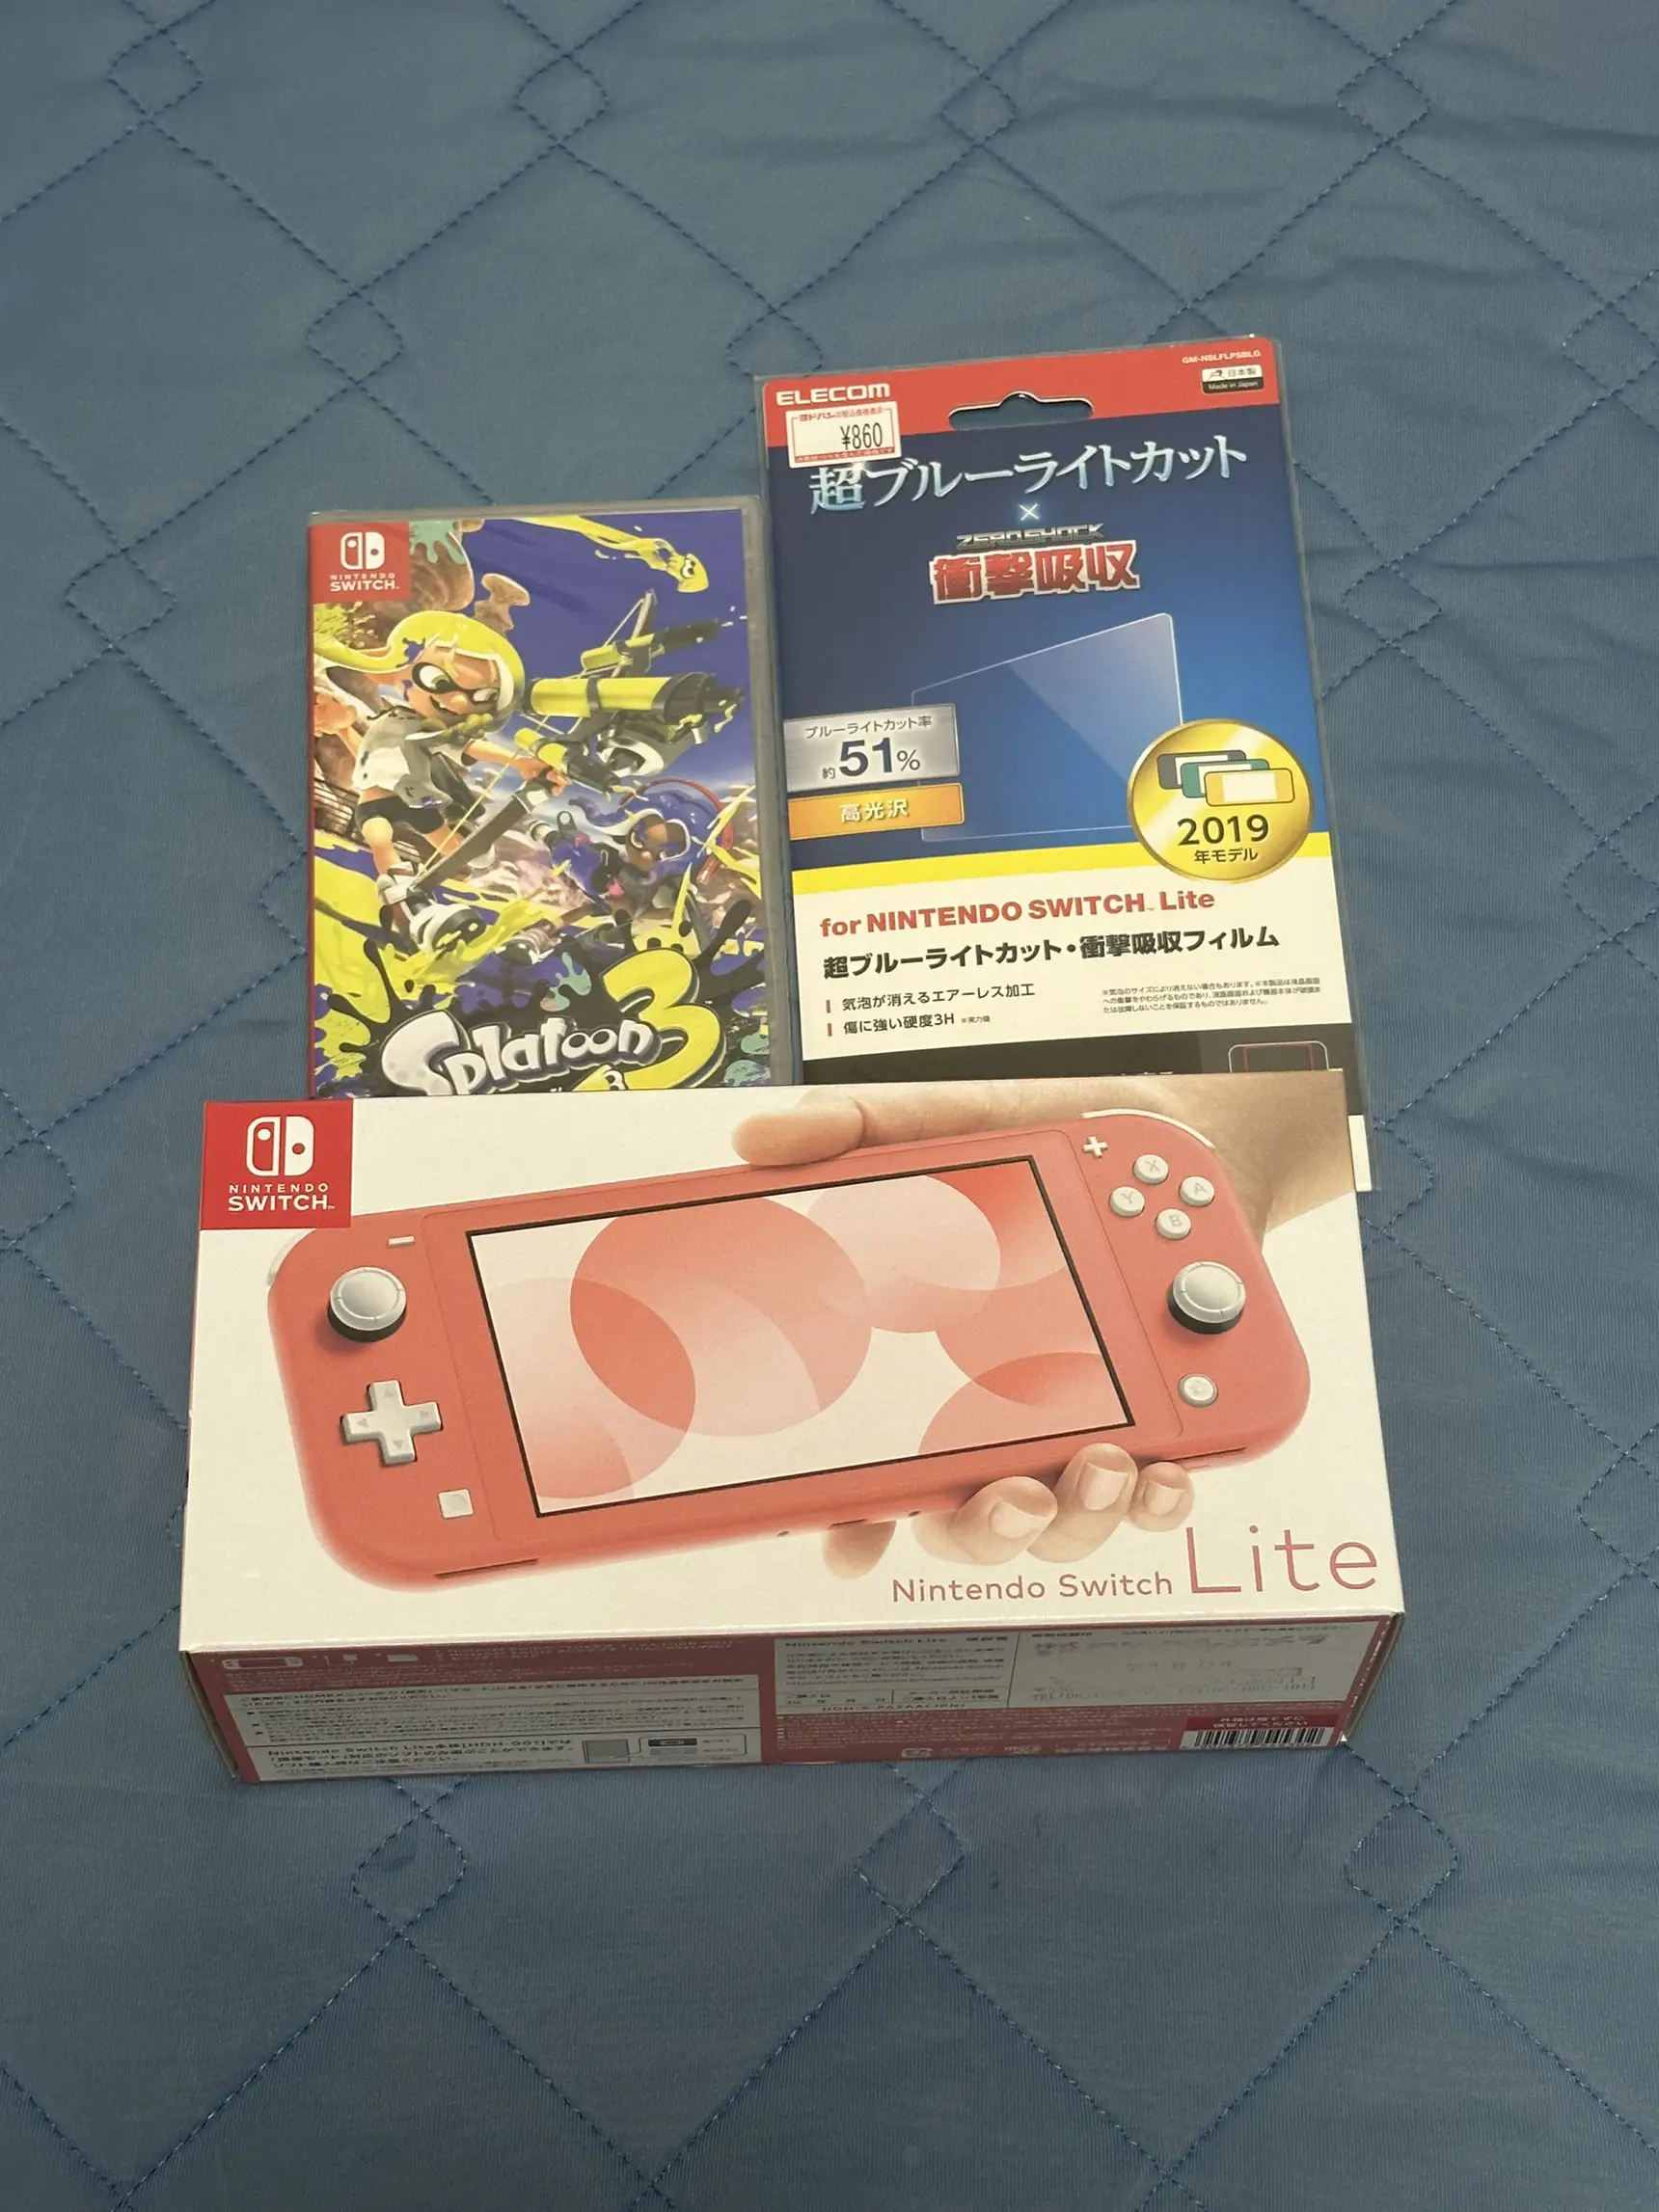 Nintendo Switch Lite Review - Lemon8検索